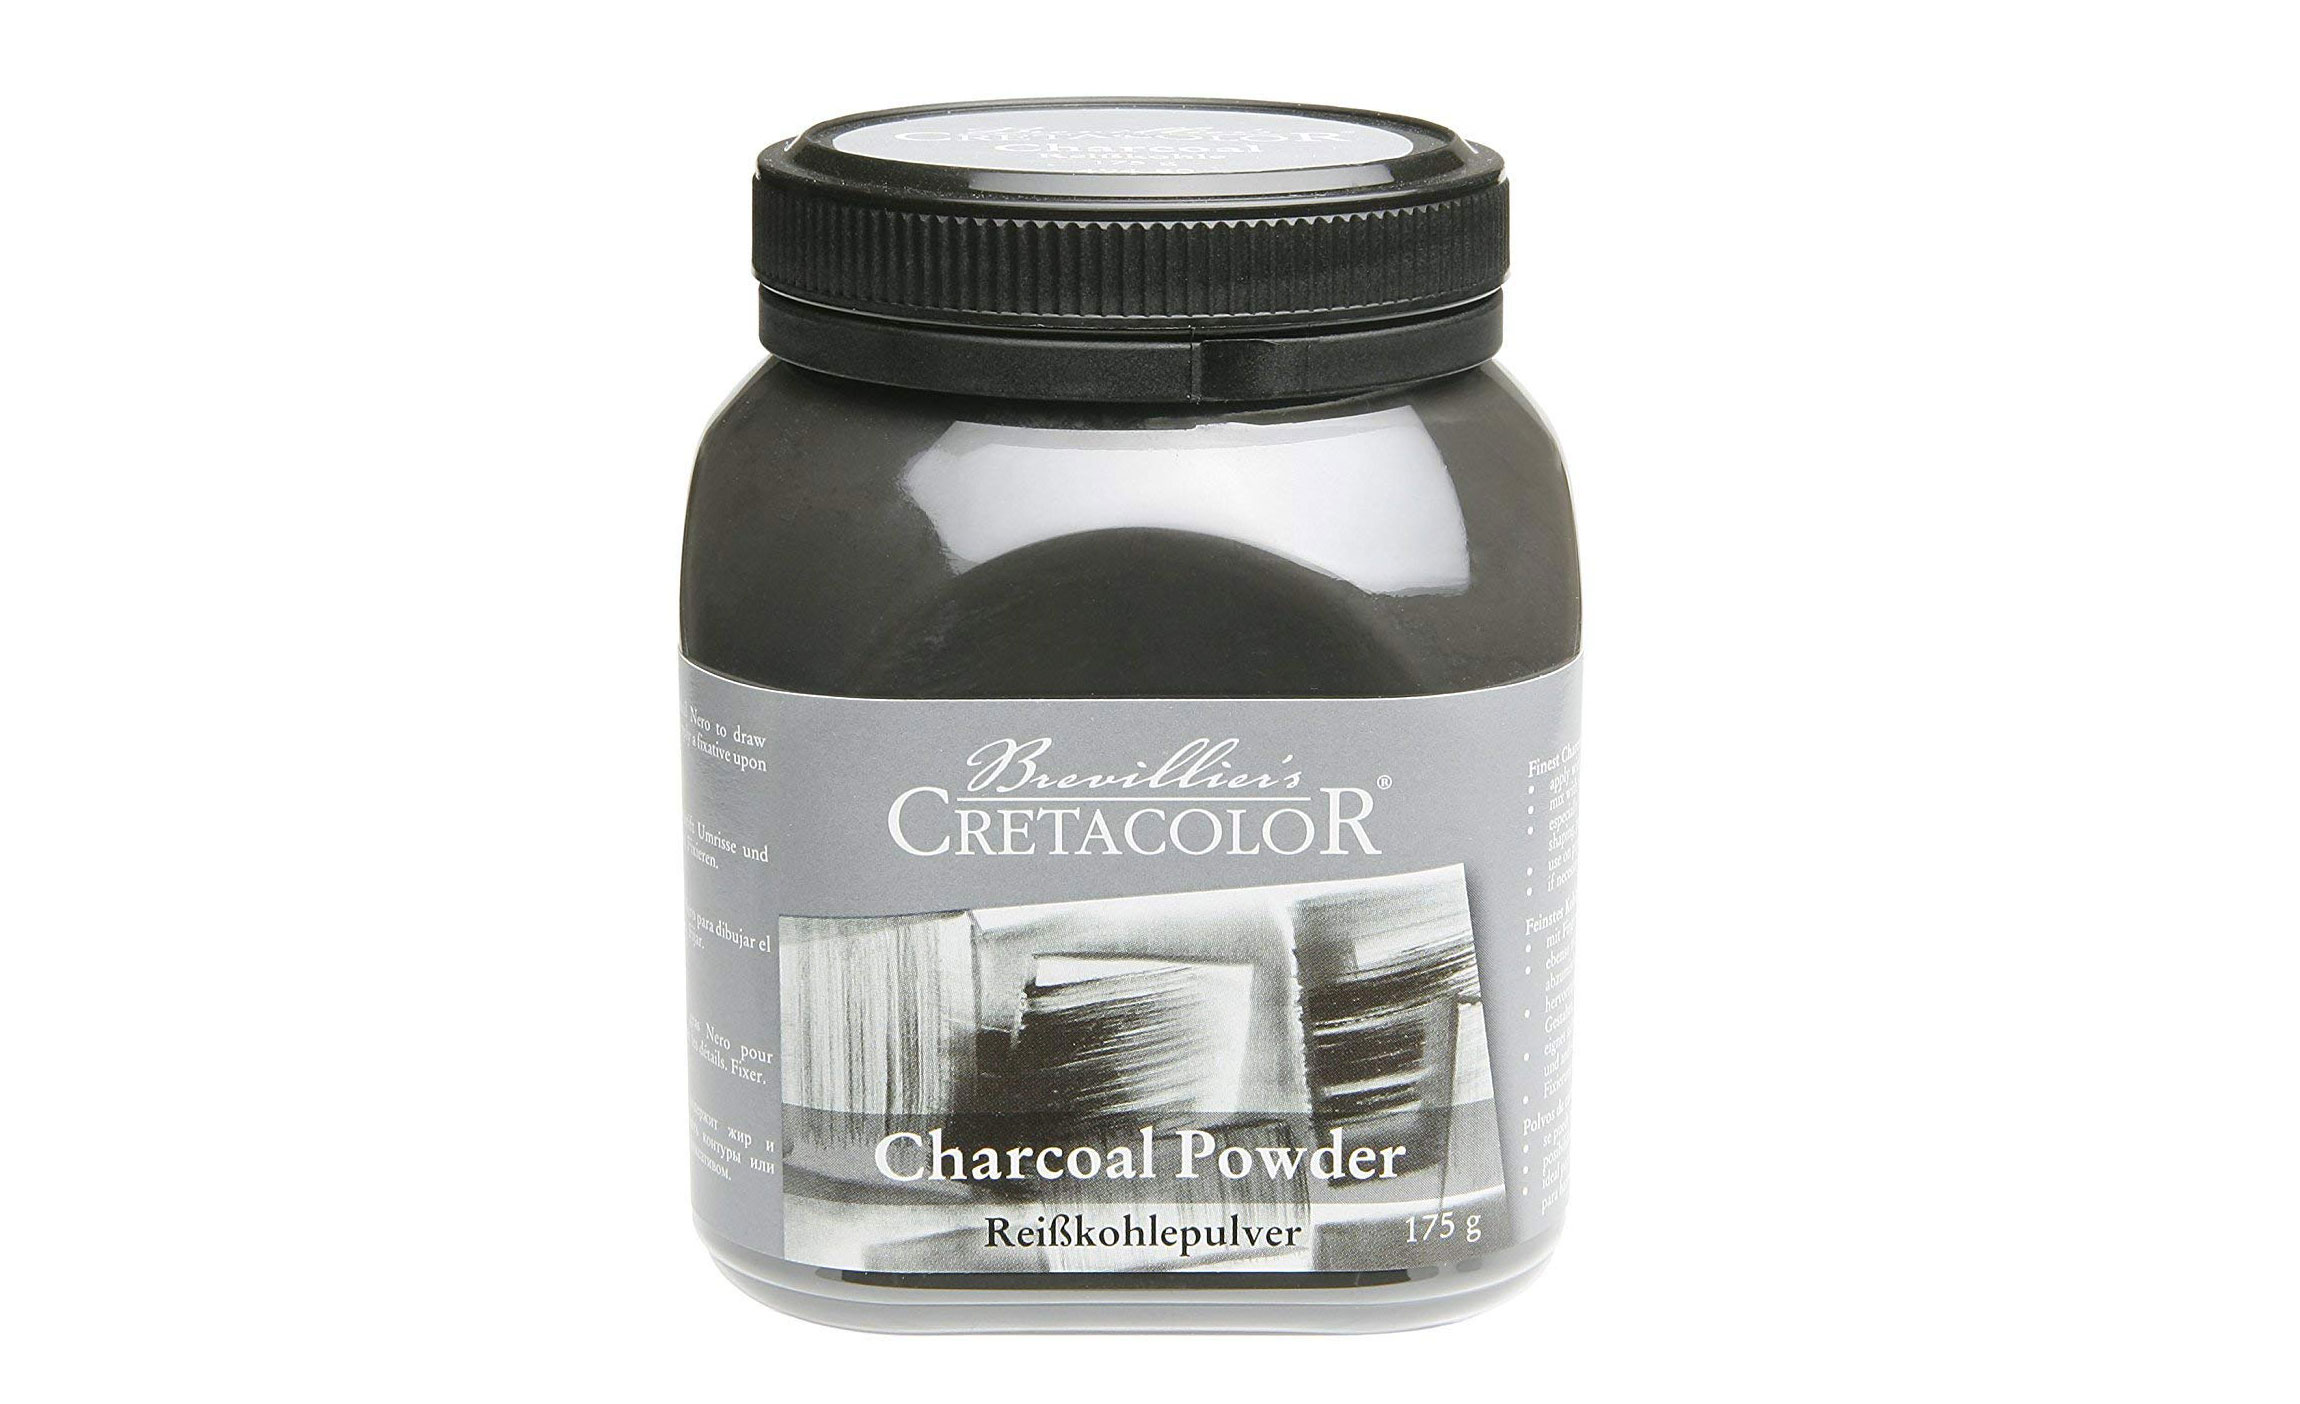 Best pencils: Cretacolor charcoal powder